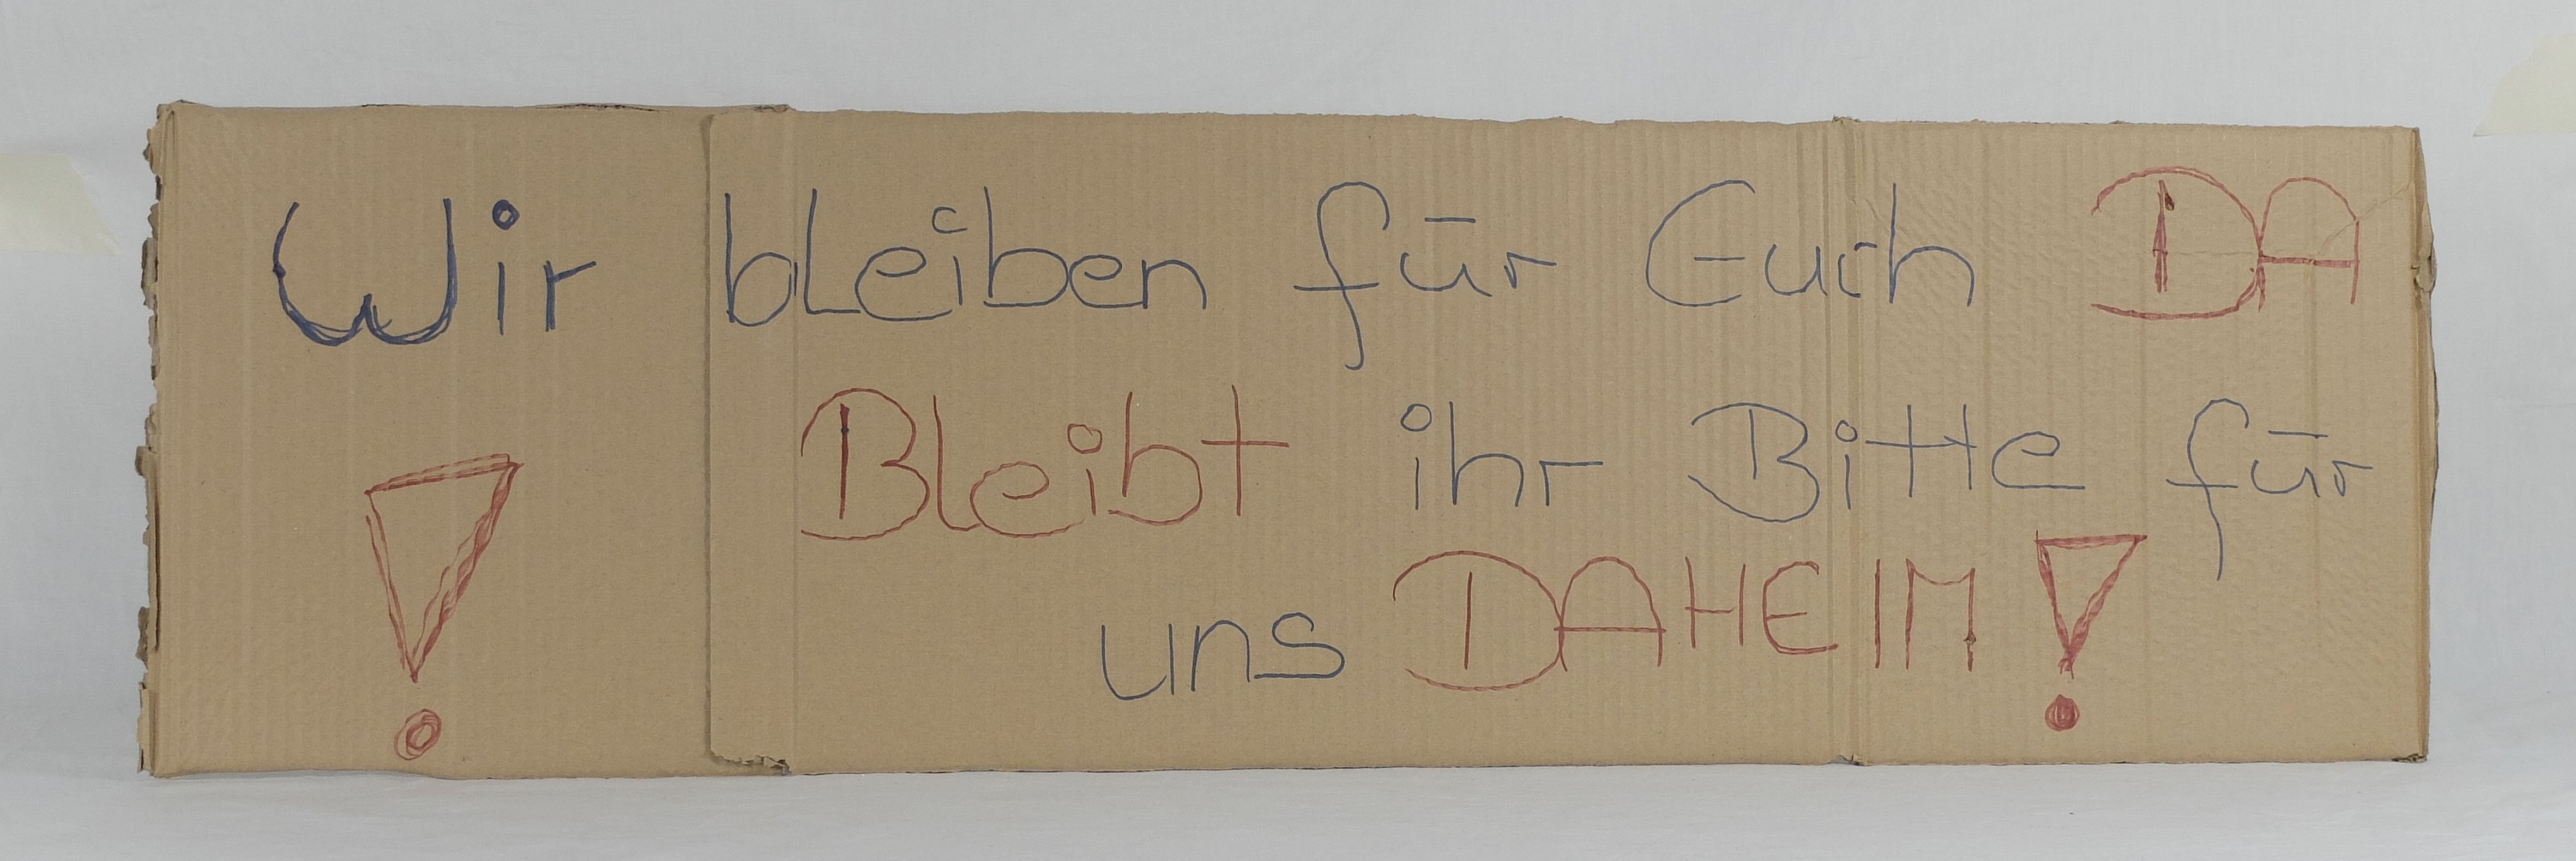 Pappschild mit Text aus der Lockdown-Zeit 2020 (Städtisches Museum im Kornhaus Kirchheim unter Teck CC BY-NC-SA)